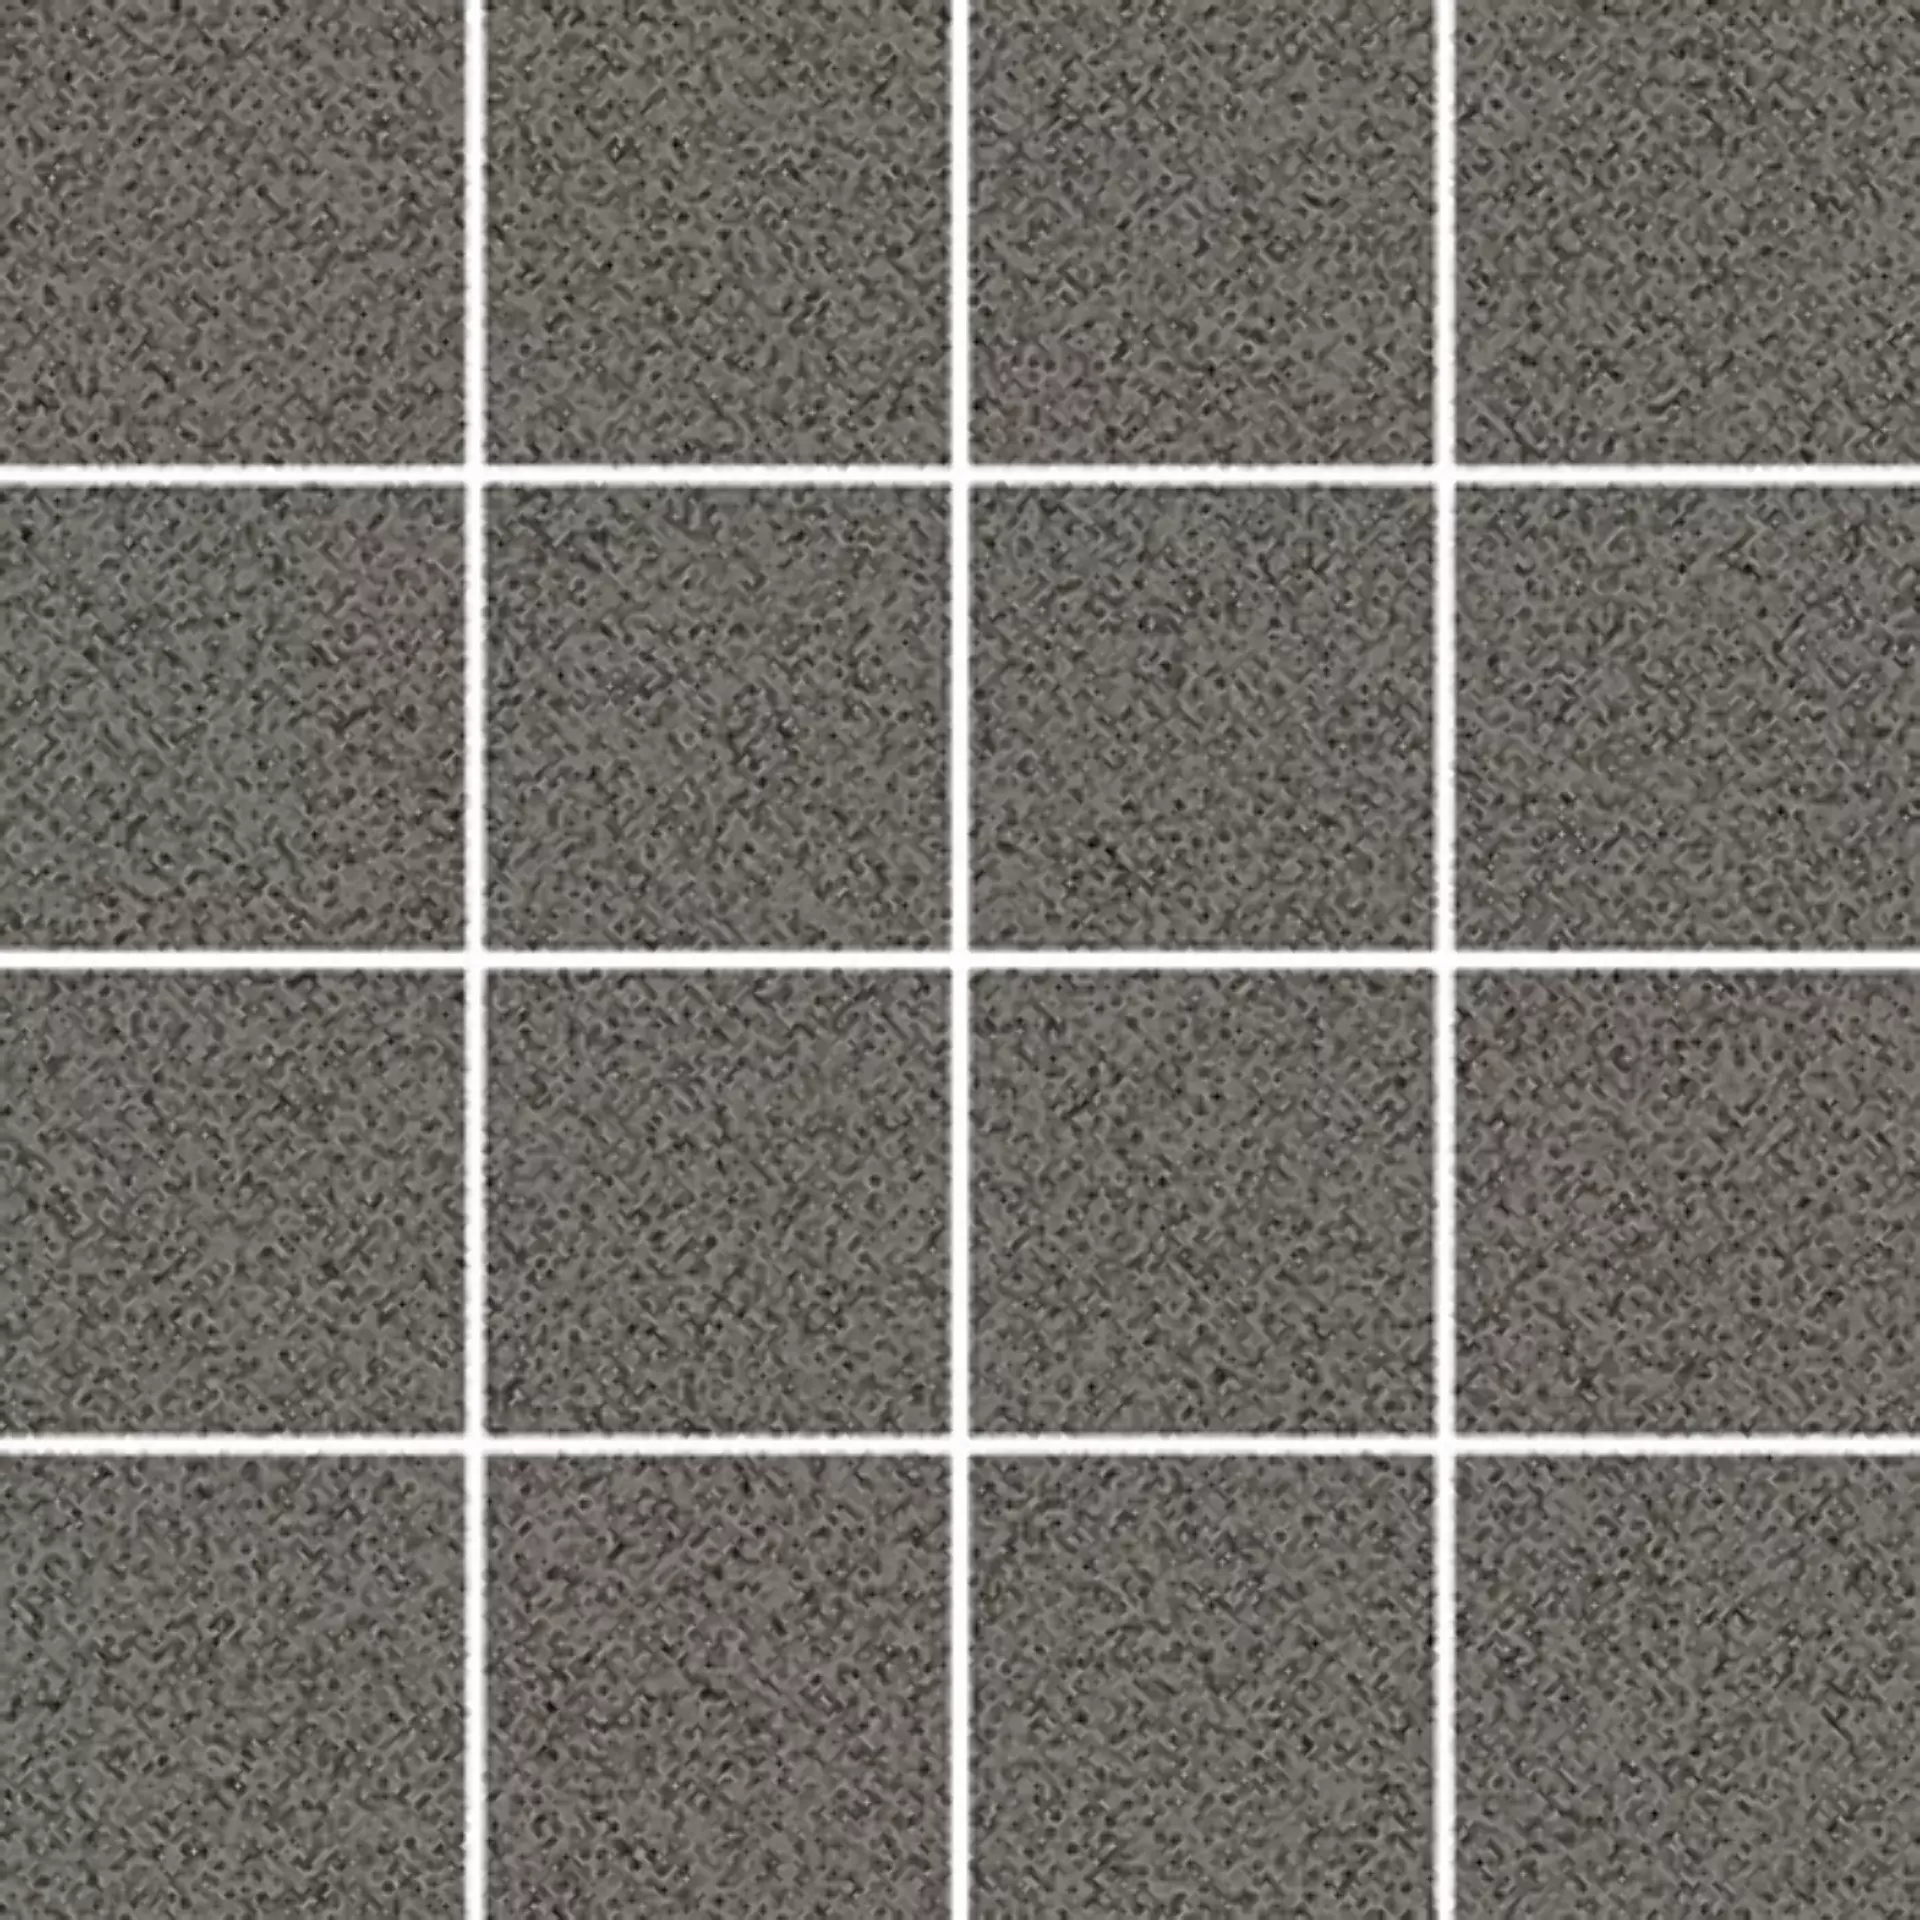 Wandfliese,Bodenfliese Villeroy & Boch Pure Line 2.0 Concrete Grey Matt Concrete Grey 2013-UL62 matt 7,5x7,5cm Mosaik (7,5x7,5) rektifiziert 12mm